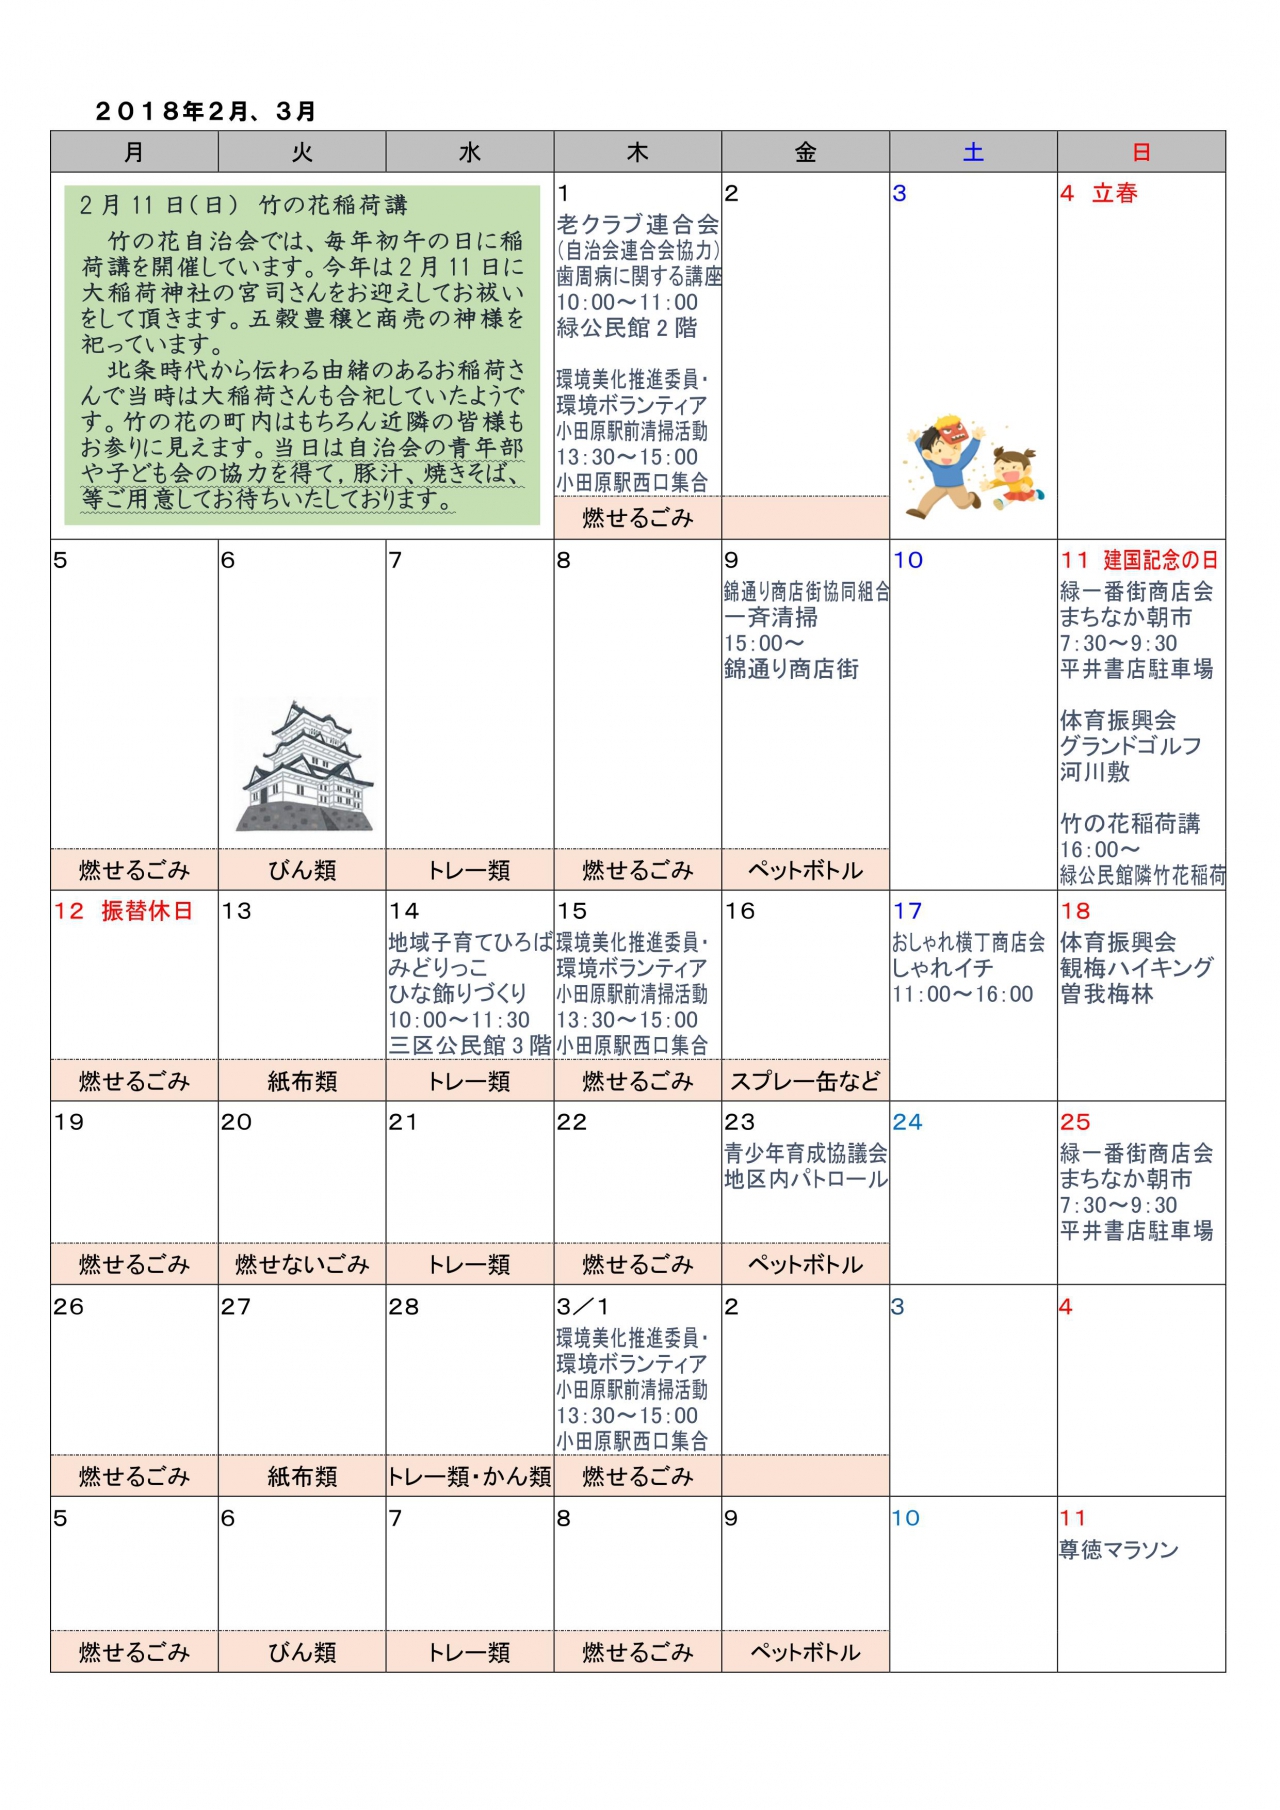 緑地区イベントカレンダー 1月2月発行 各自治会からのお知らせ 小田原市自治会総連合